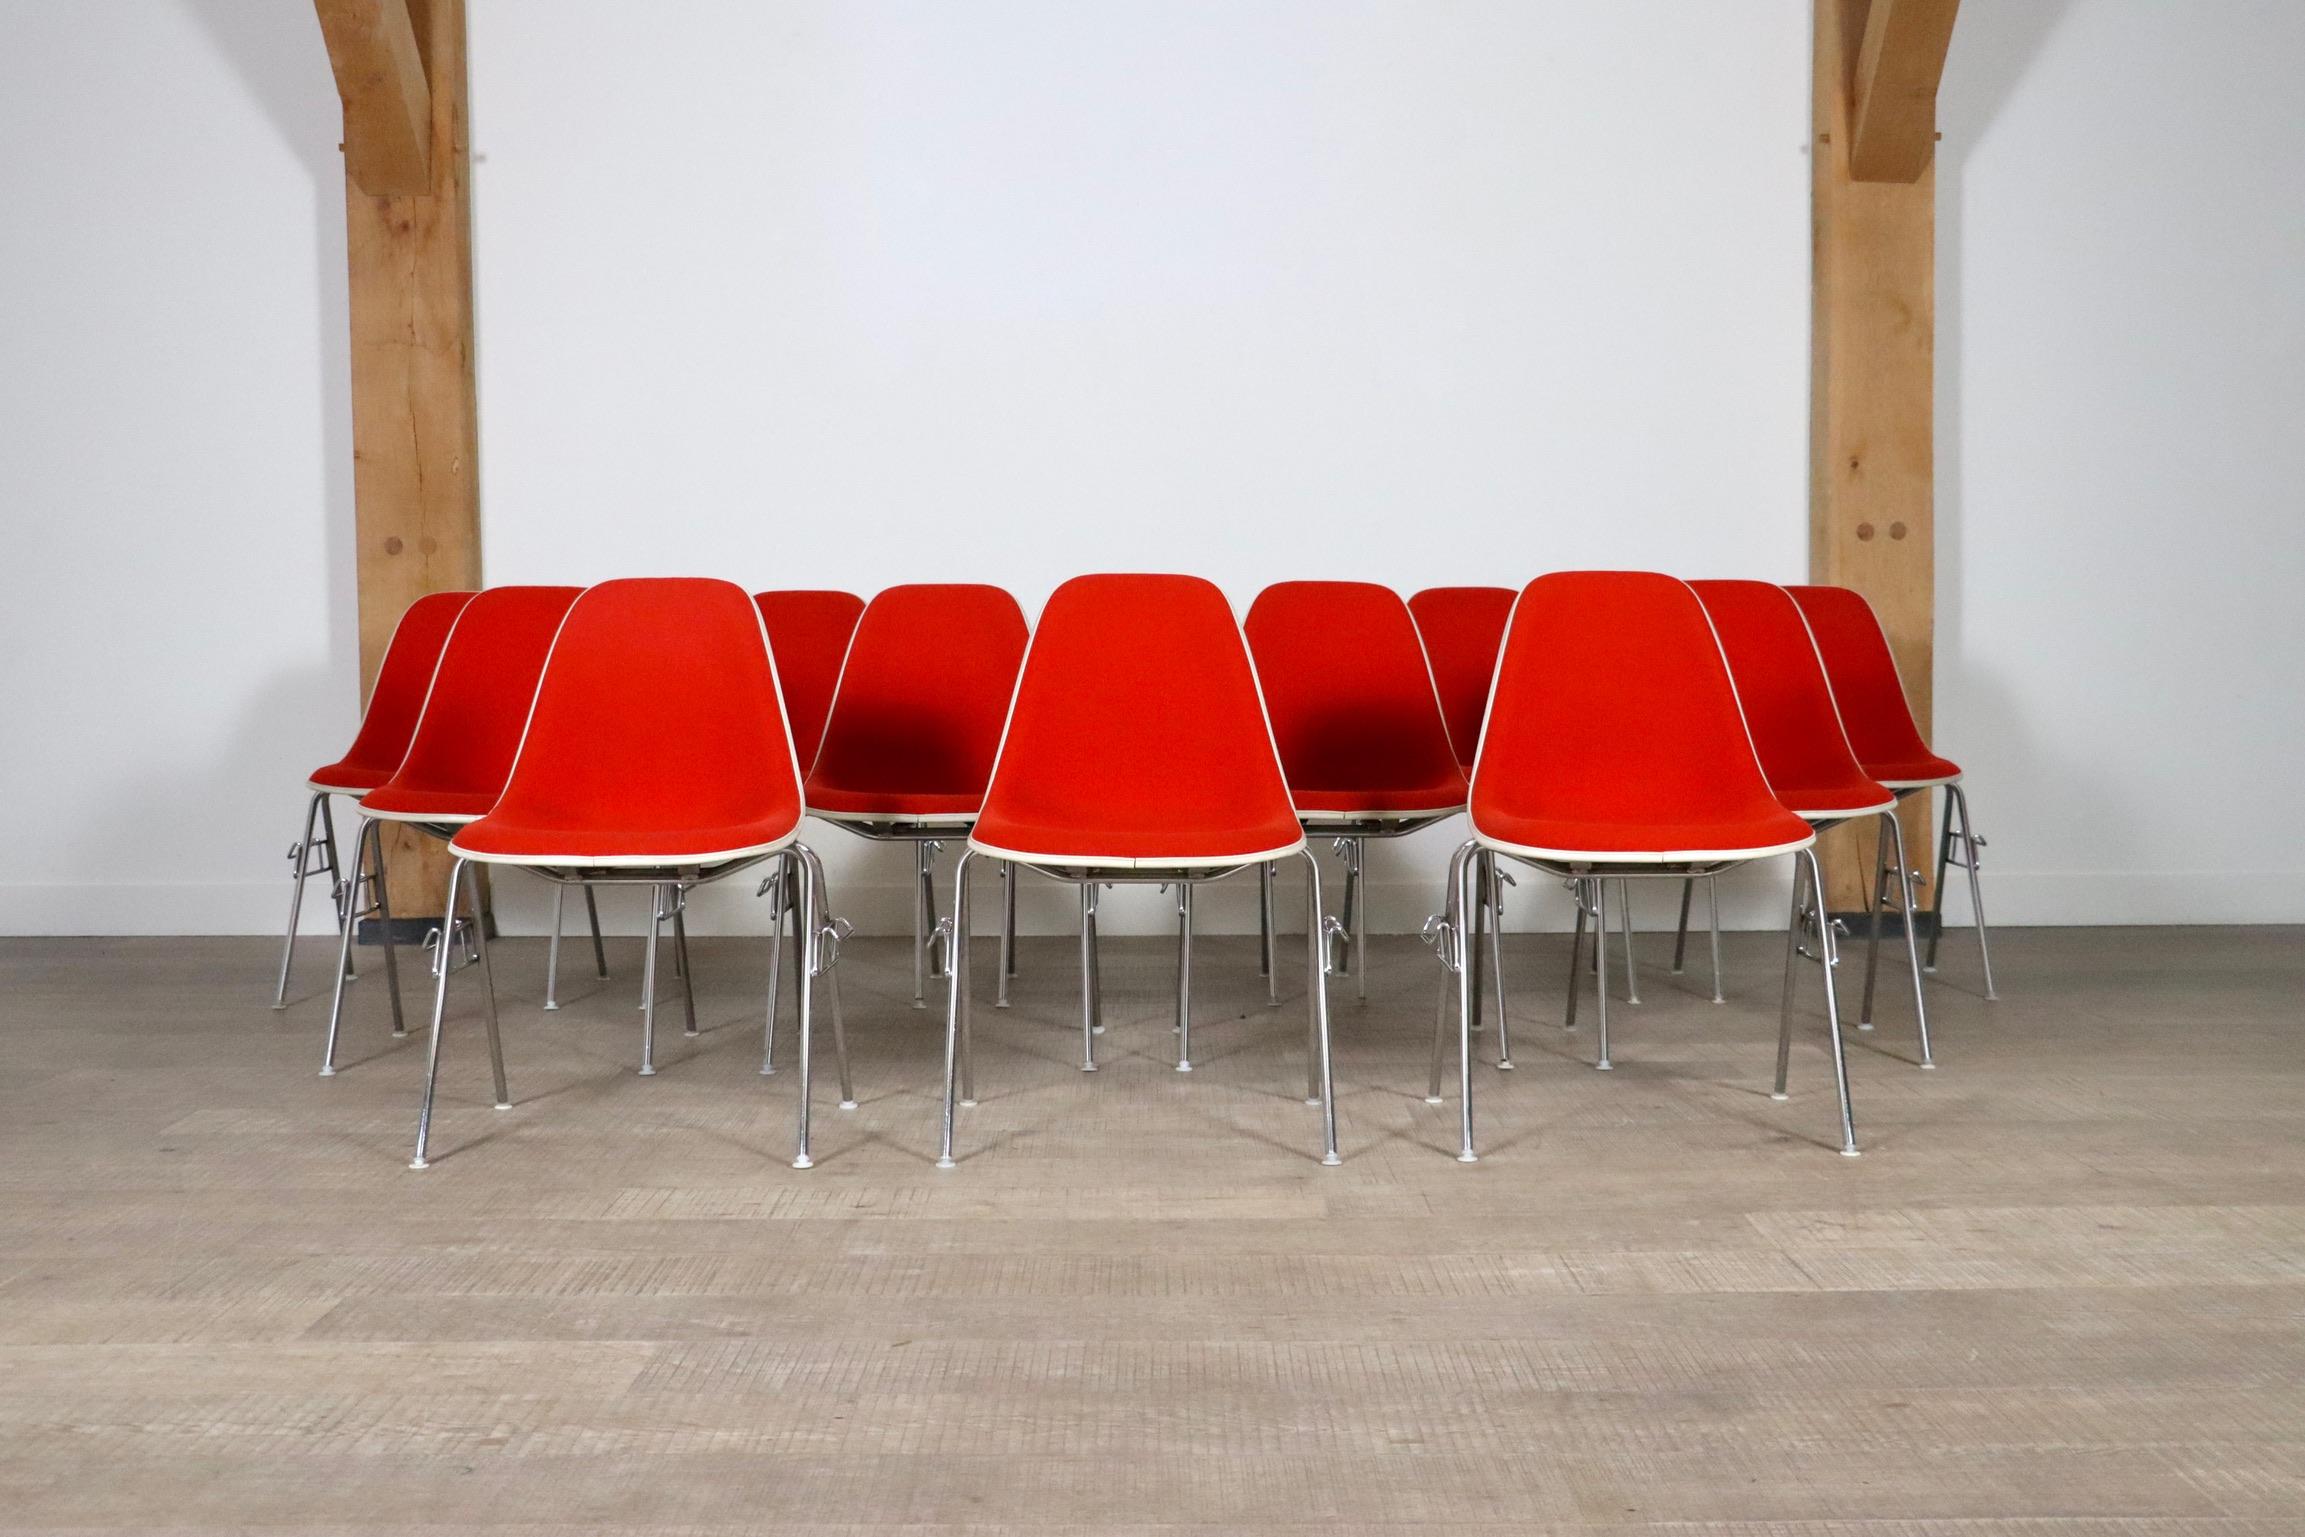 Schöner Satz von 12 stapelbaren Stühlen Modell DSS von Charles und Ray Eames für Herman Miller. Diese Garnitur besteht aus einer Fiberglasschale und ist rot gepolstert mit einem weißen Rand. Ein schönes Set, das sich bei Bedarf leicht stapeln und